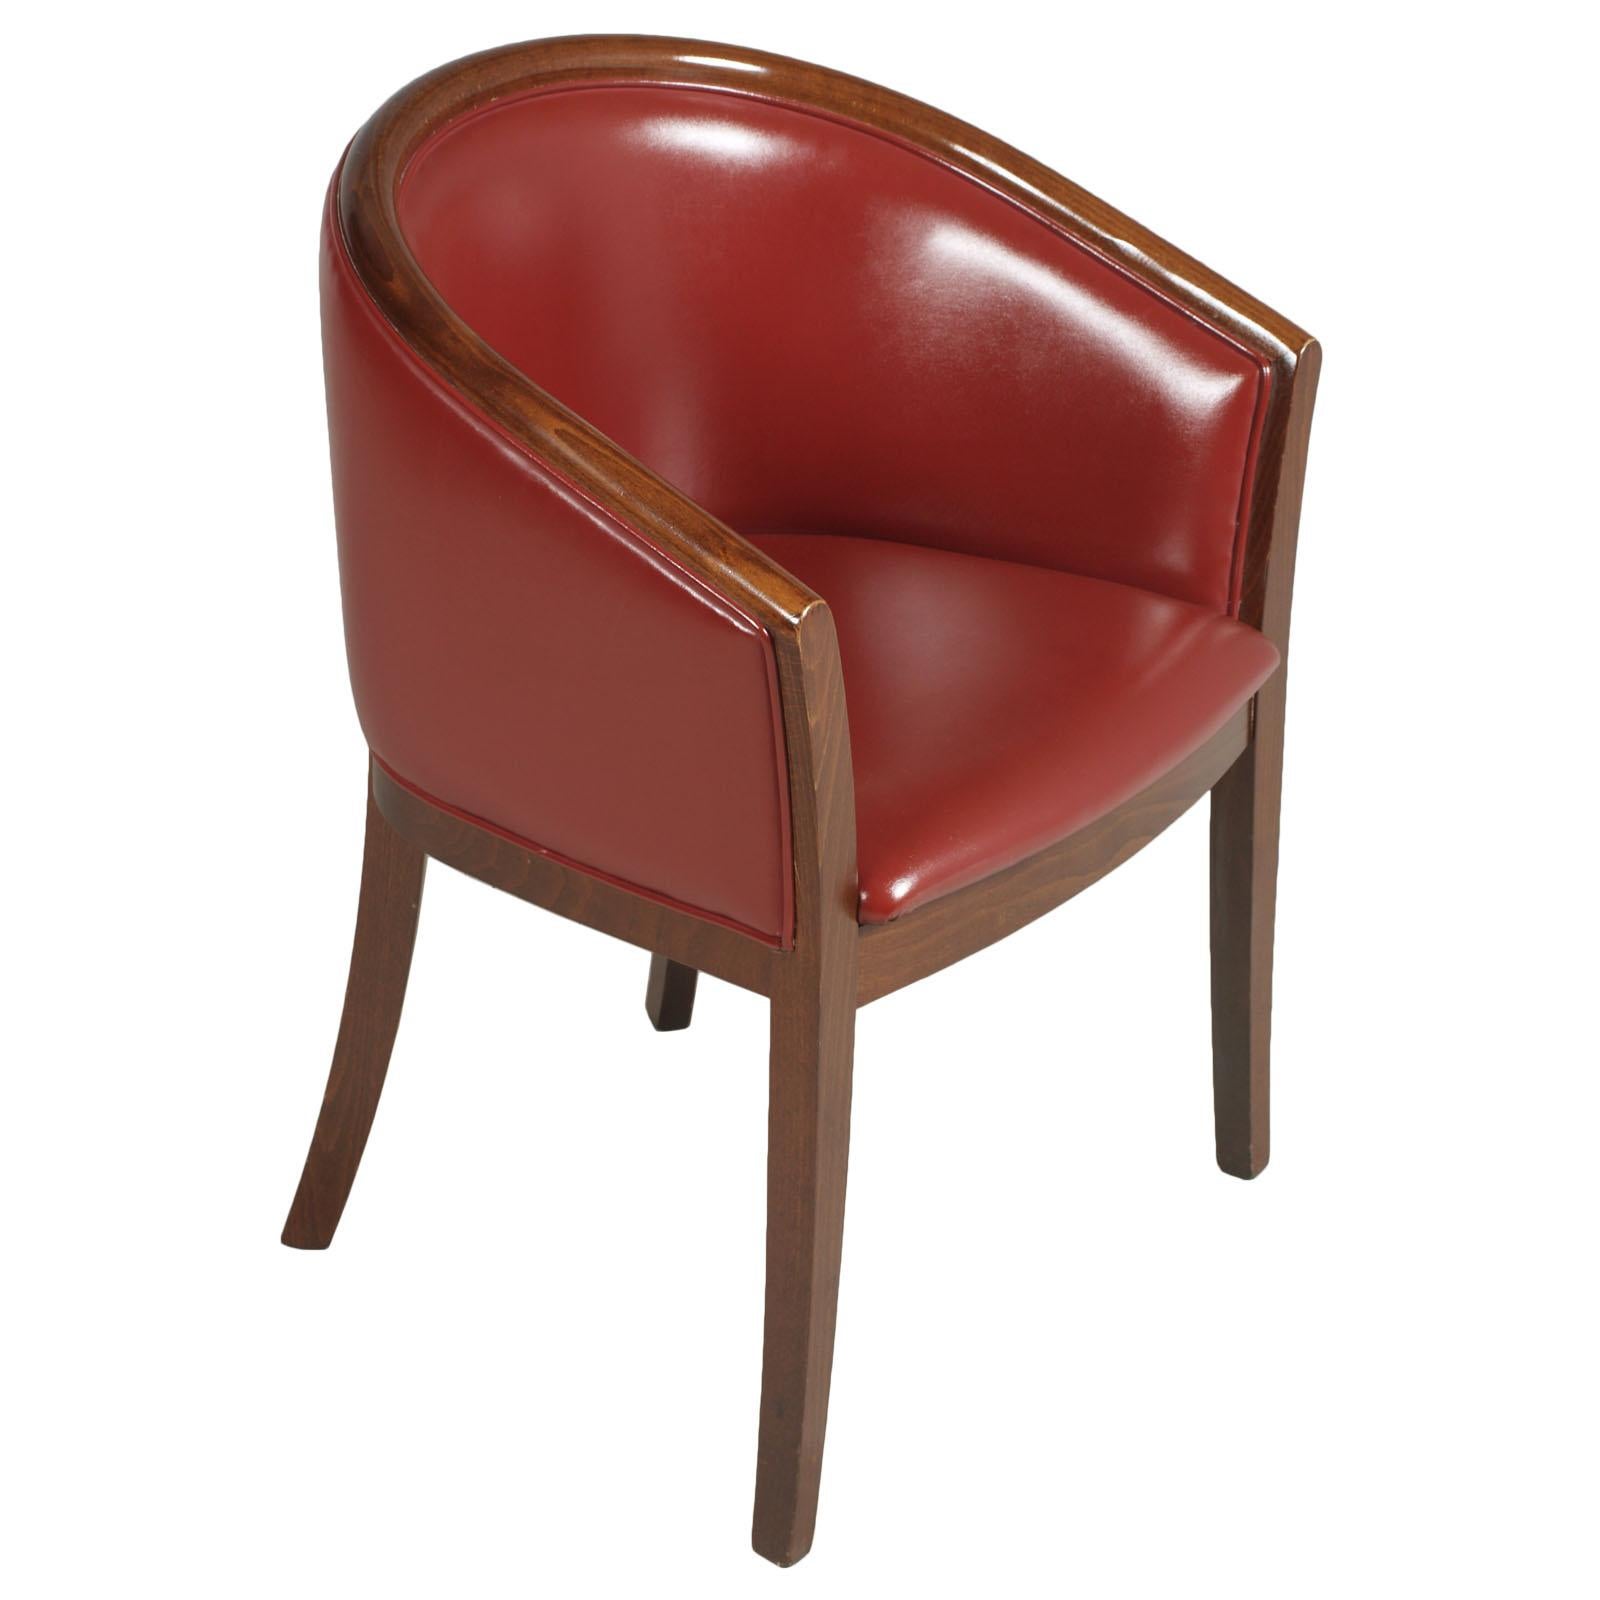 1930er Jahre italienische Club Lounge Stühle, Sessel, Art Deco, restauriert, neue bordeauxrote Lederpolsterung, Nussbaumwachs poliert Jules Leleu Stil.

Diese klassischen roten Sessel haben eine gepolsterte Rückenlehne und Sitzfläche. Der Sitz ist